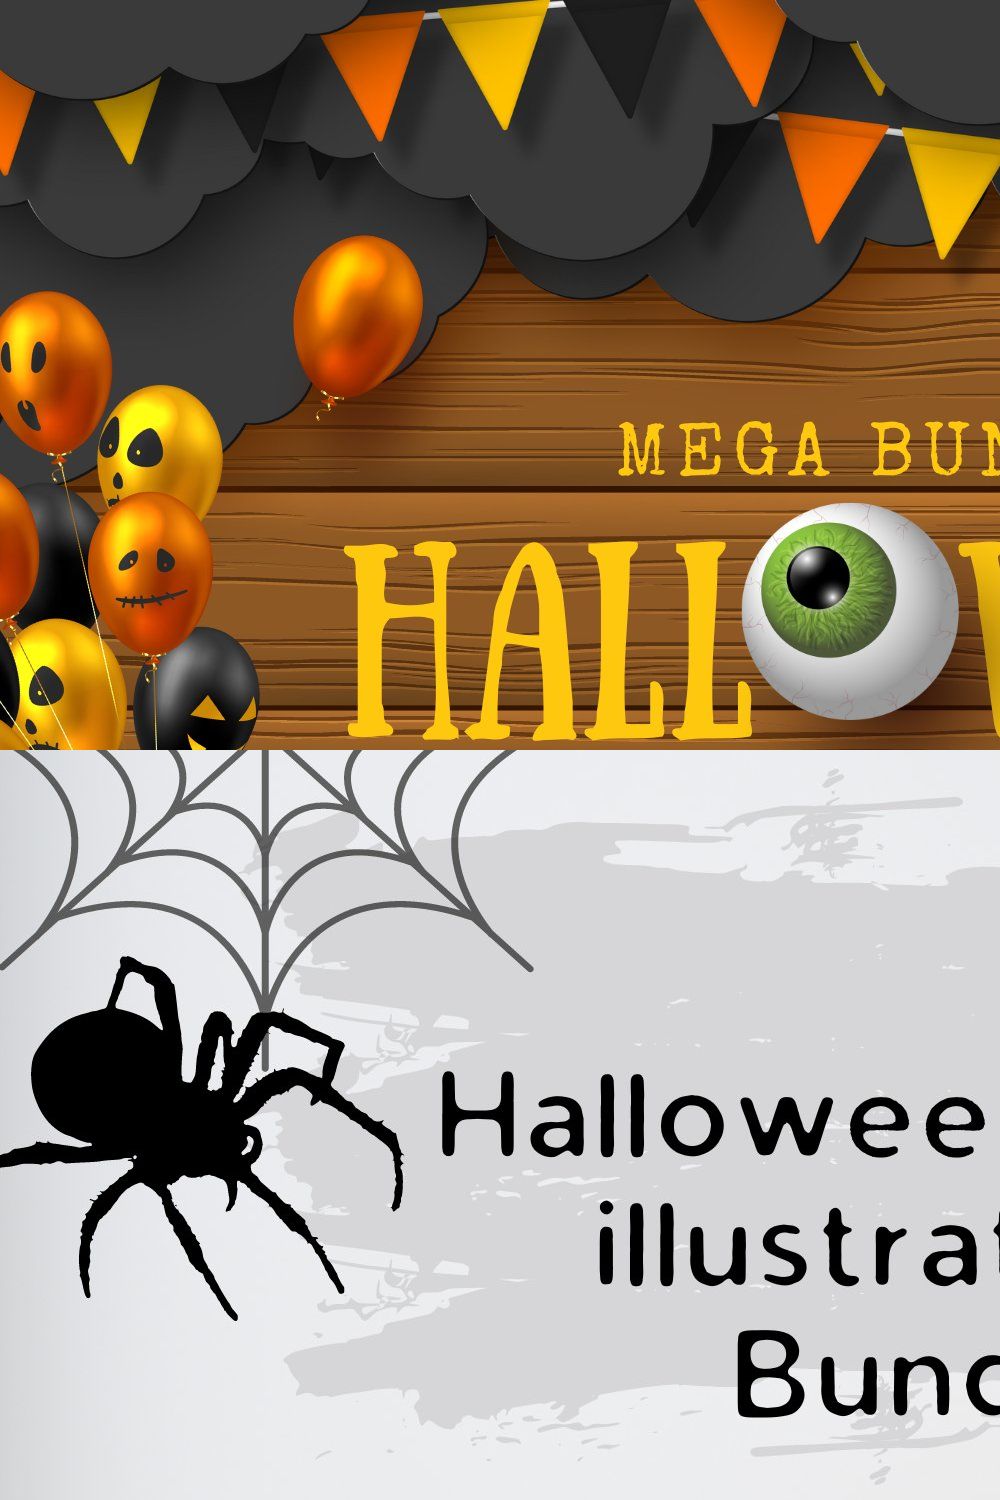 Halloween mega illustrations Bundle pinterest preview image.